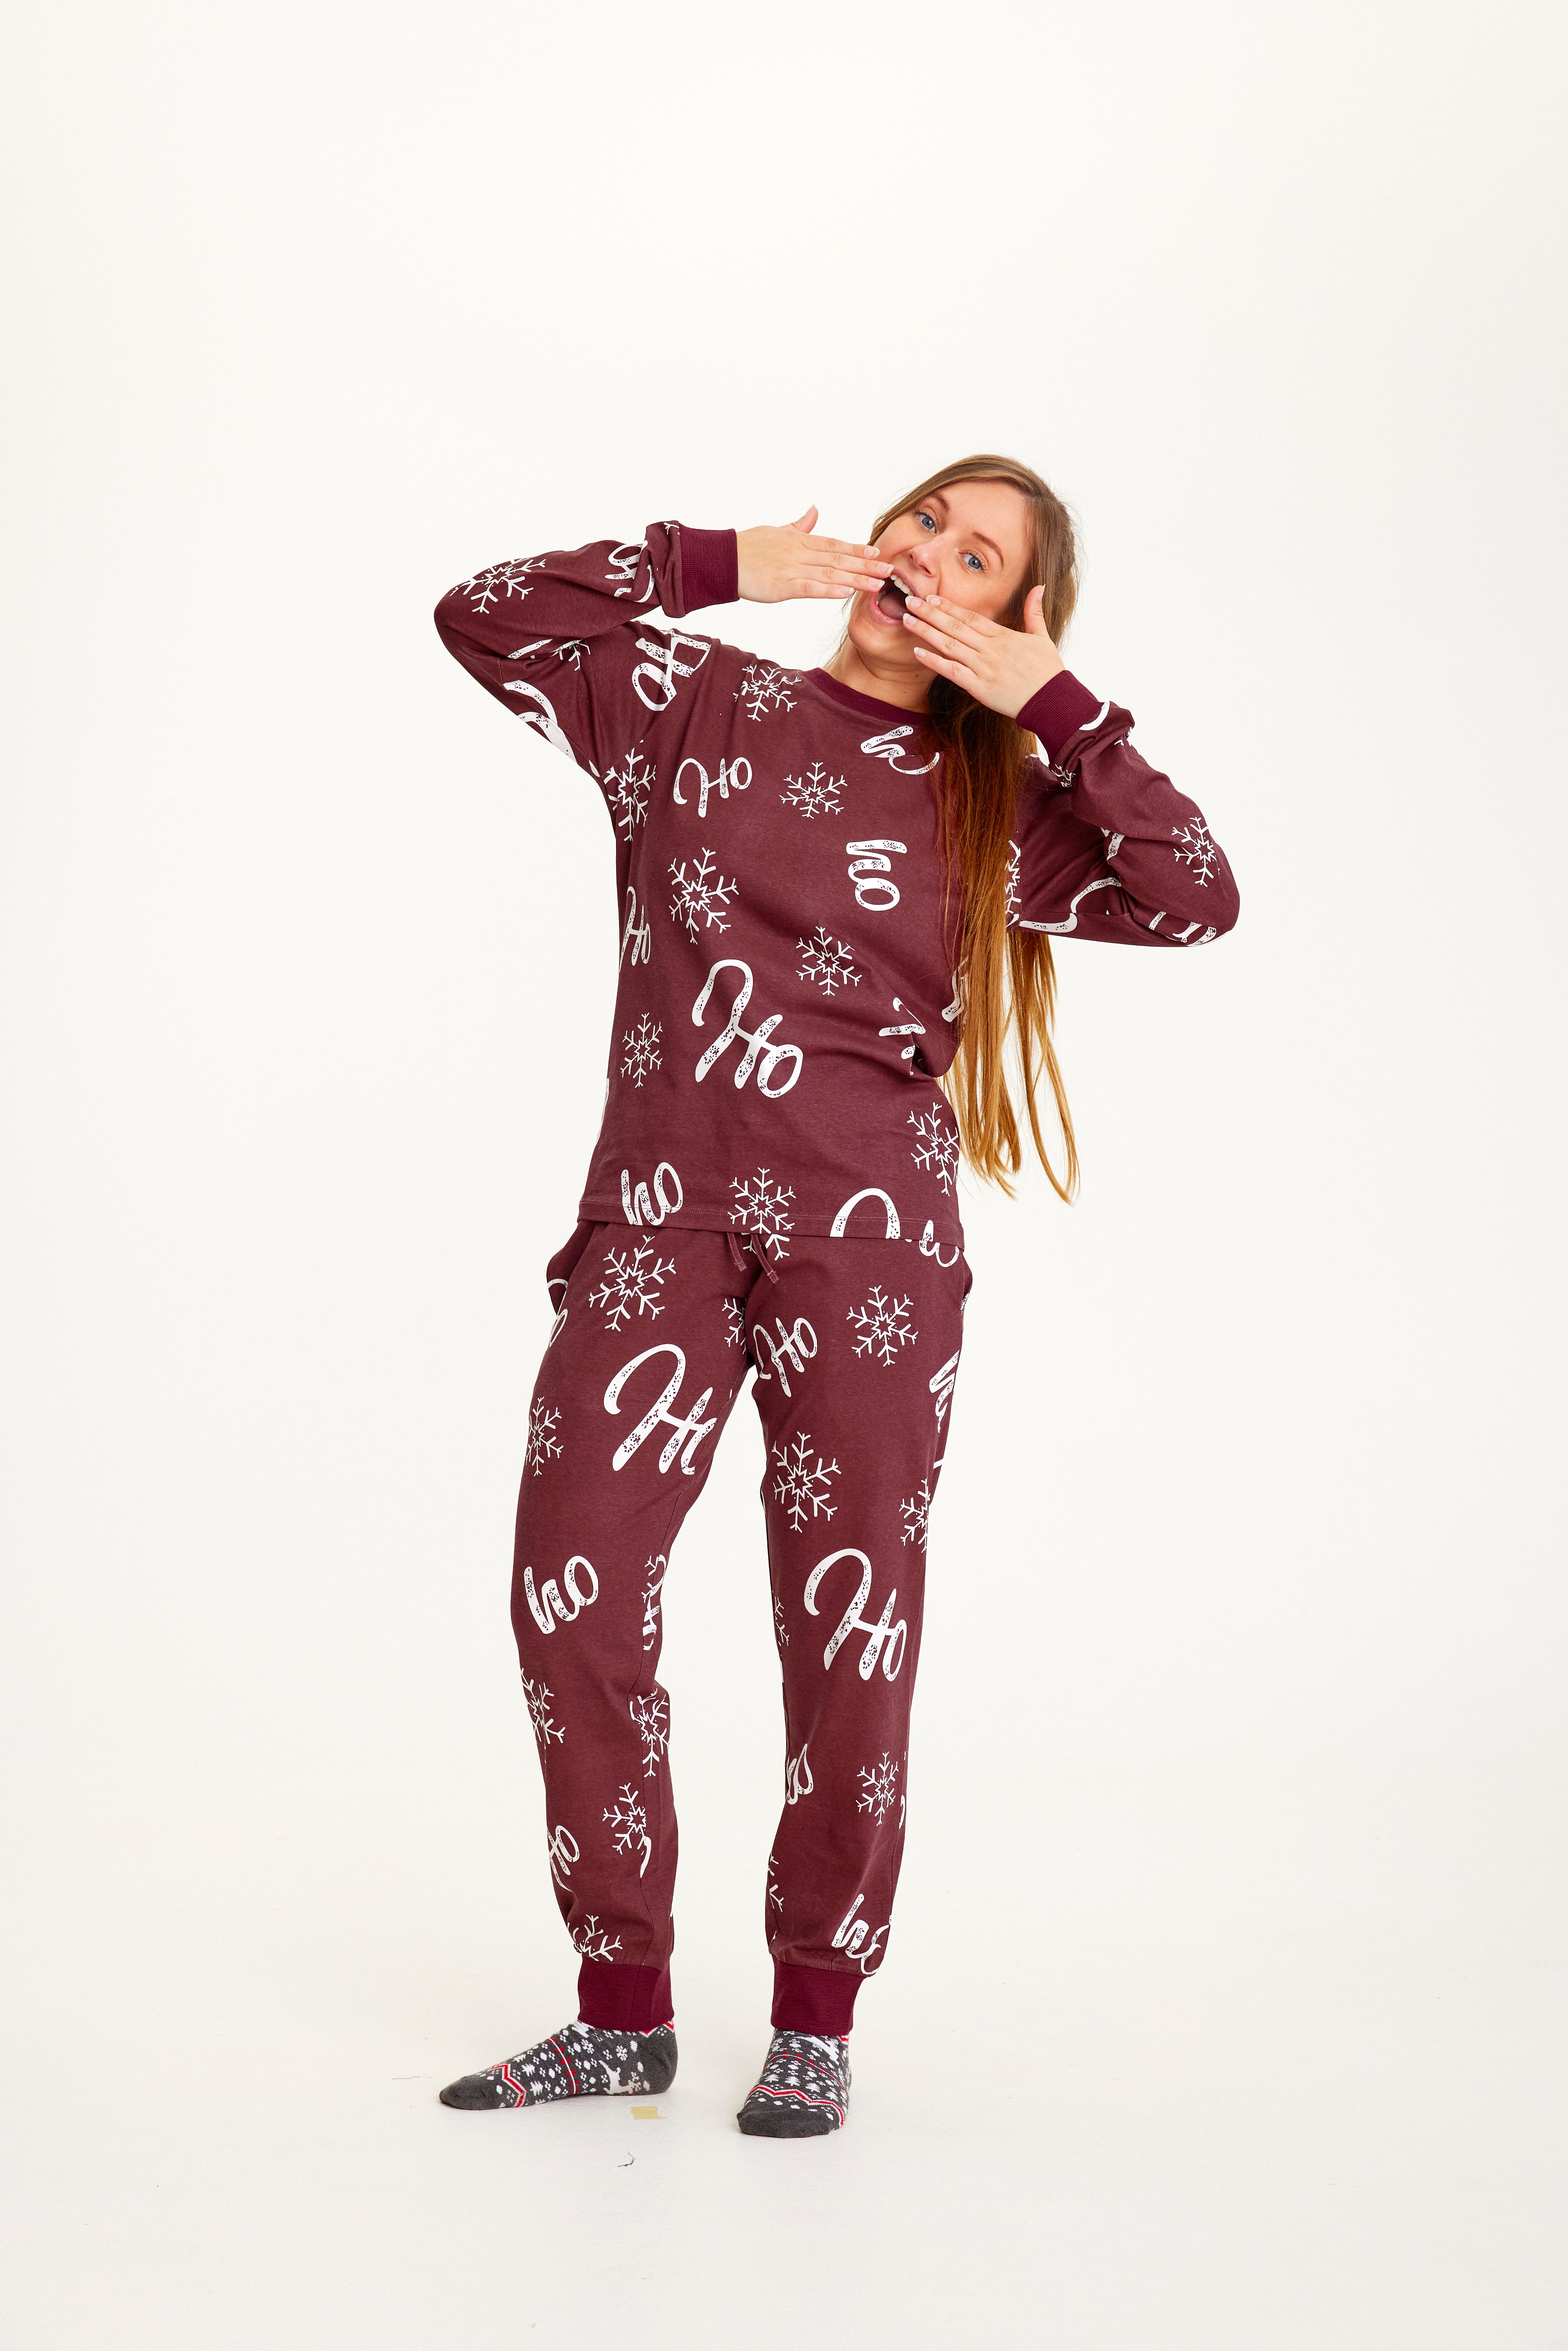 Billede af Årets julepyjamas: HO HO HO Pyjamas - dame / kvinder.